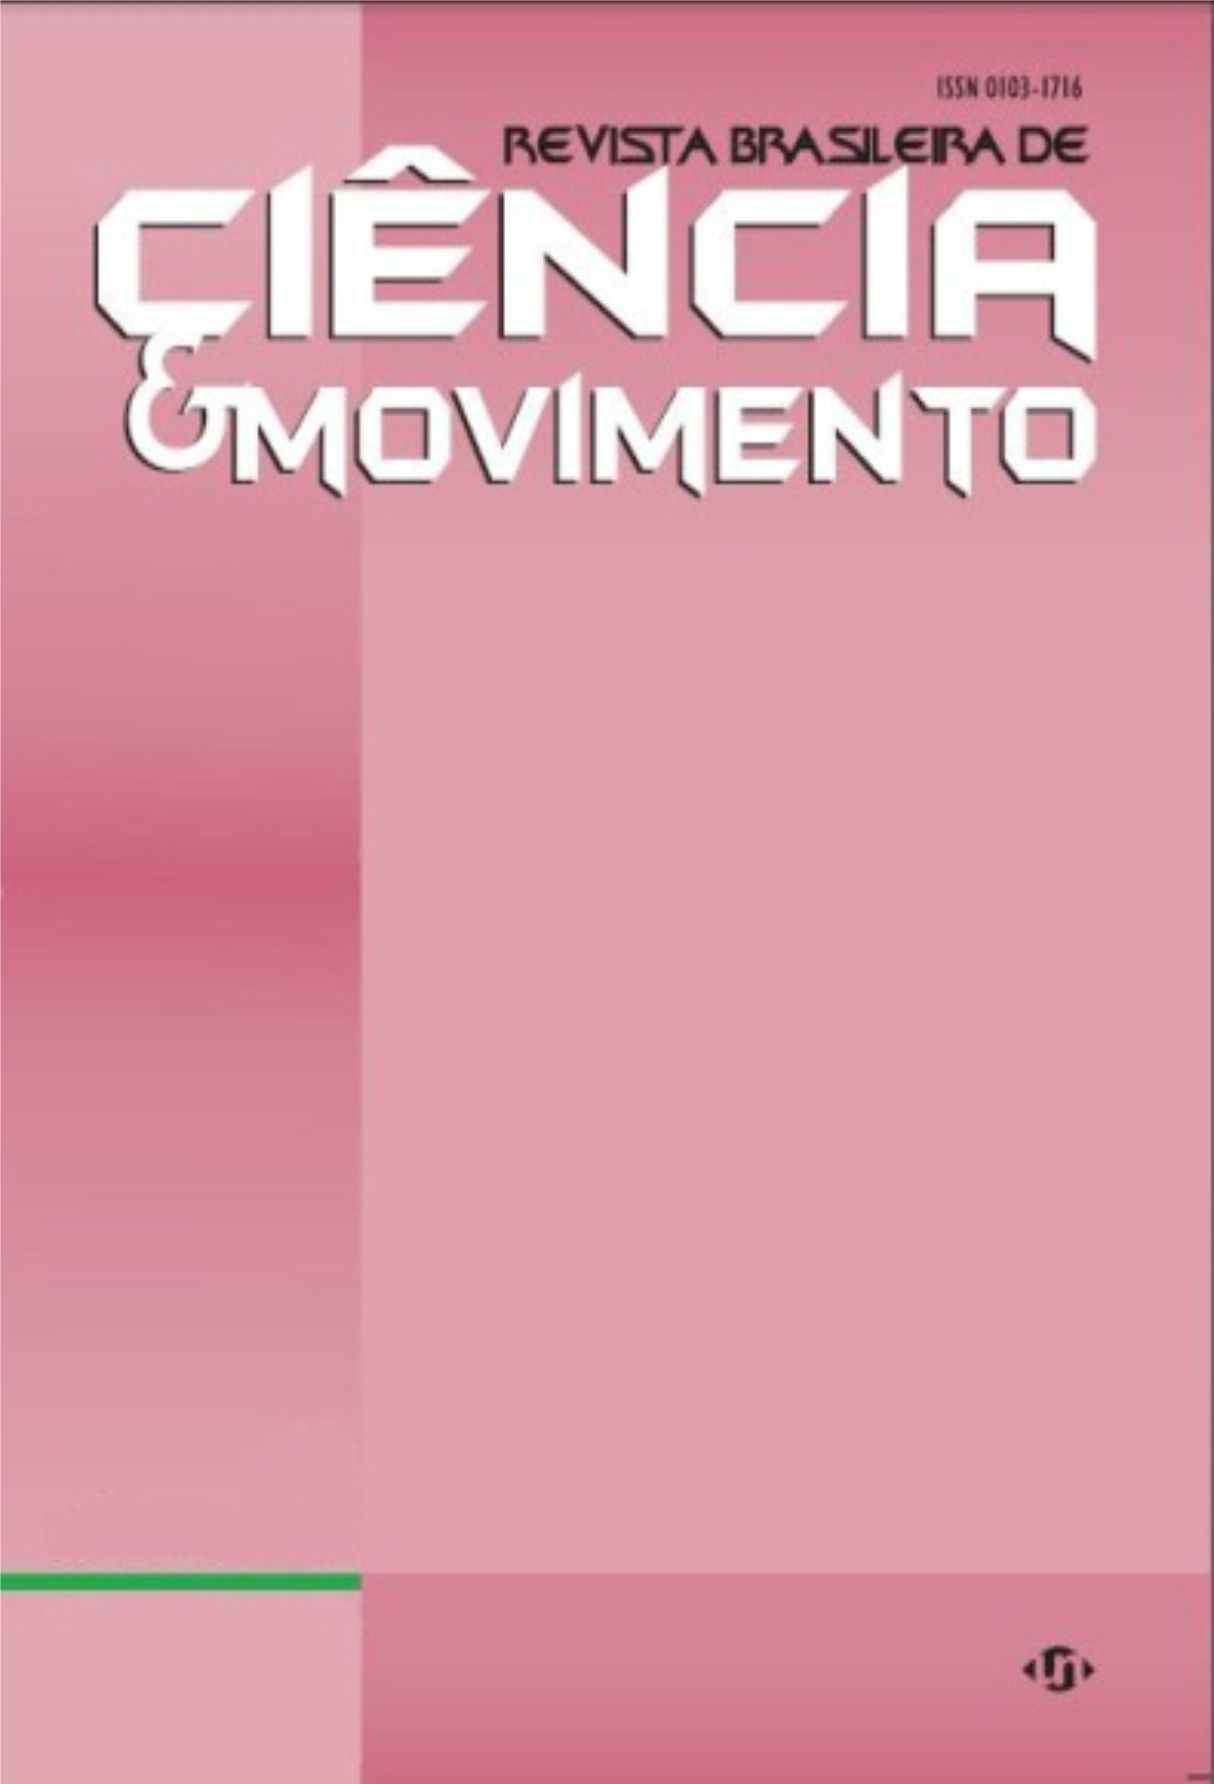 Capa: Revista Brasileira de Ciência e Movimento